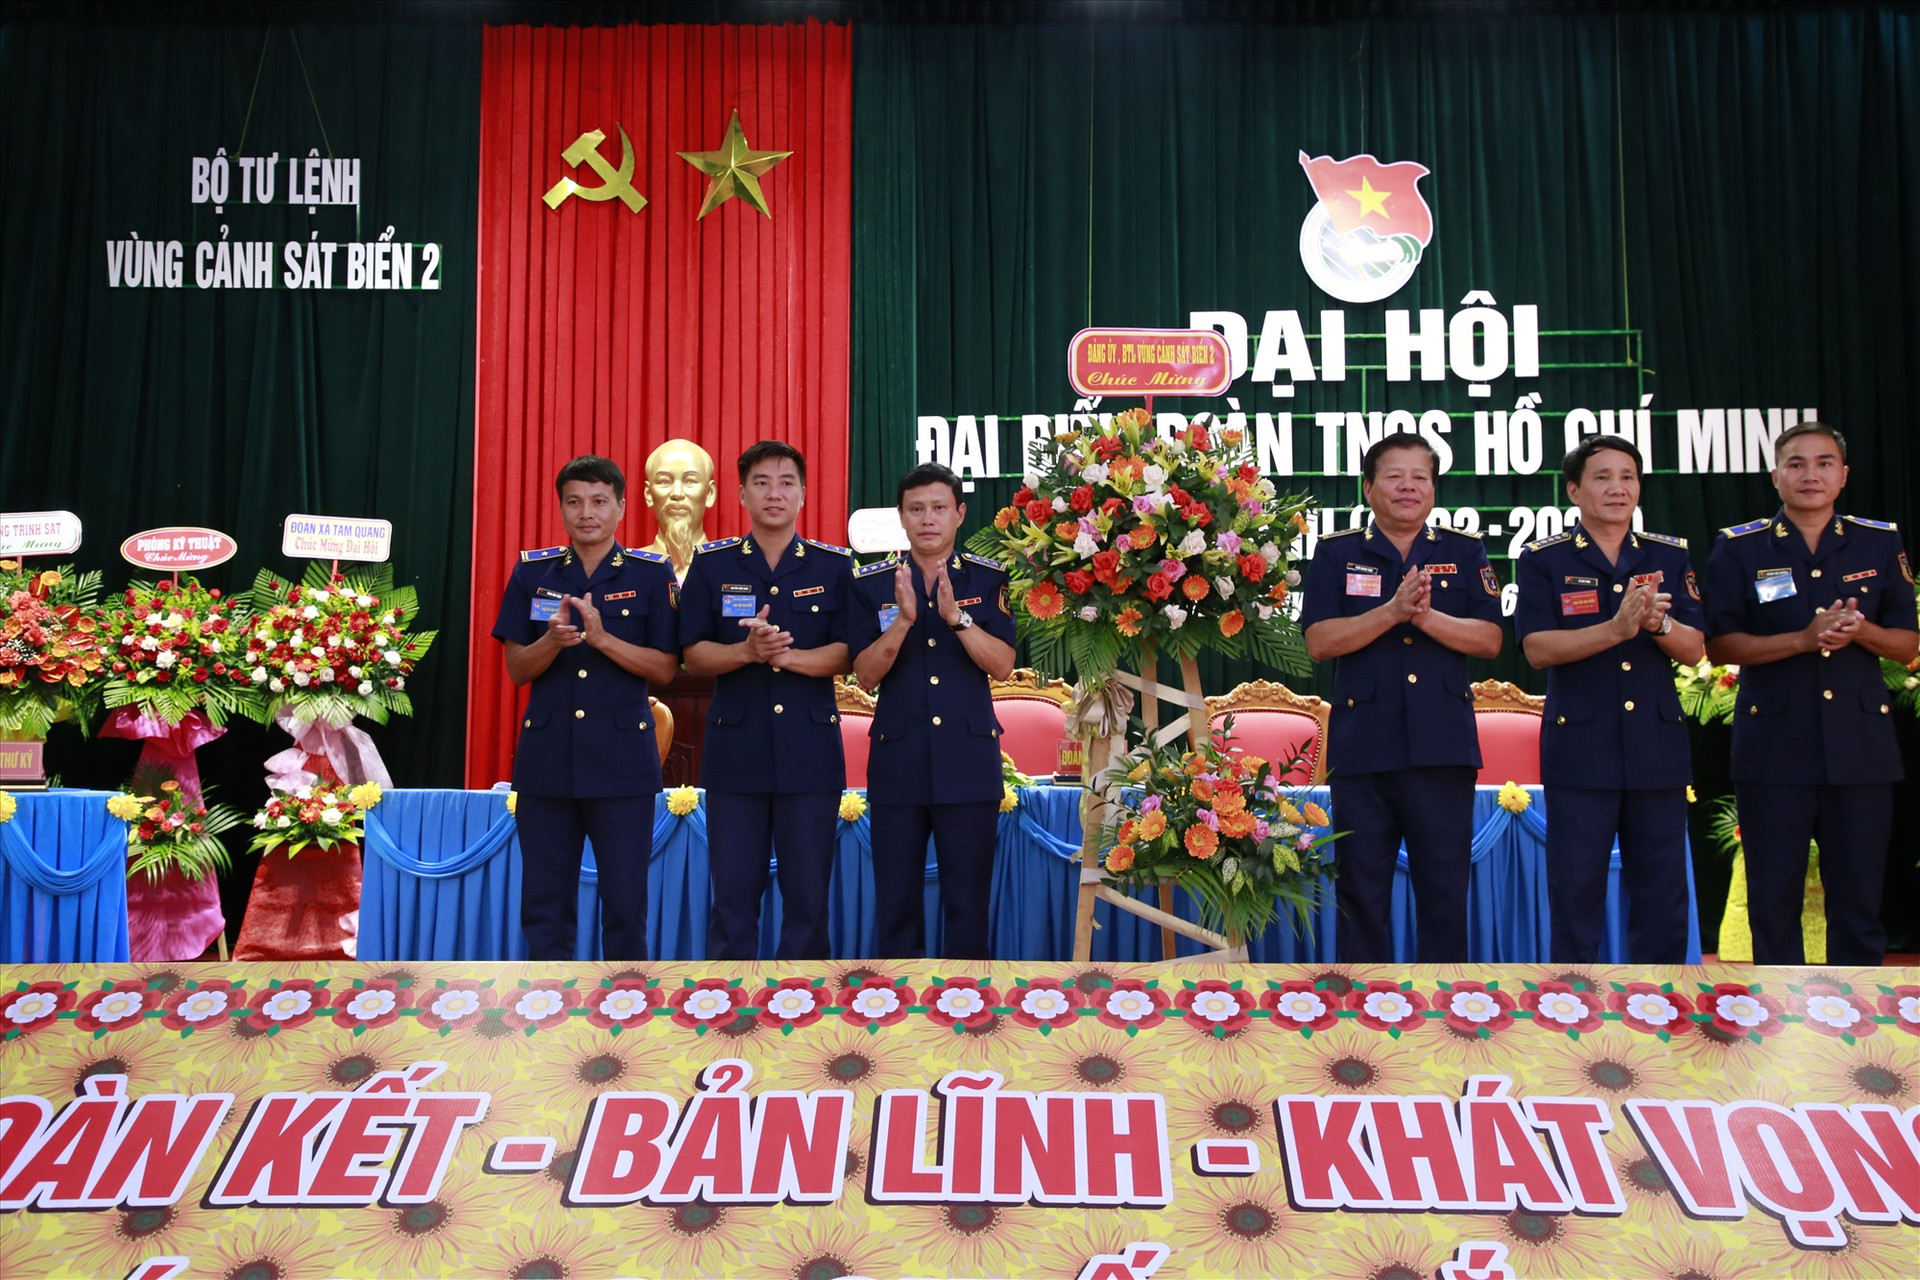 Lãnh đạo Bộ Tư lệnh Vùng Cảnh sát biển 2 tặng hoa chúc mừng đại hội. Ảnh: T.C